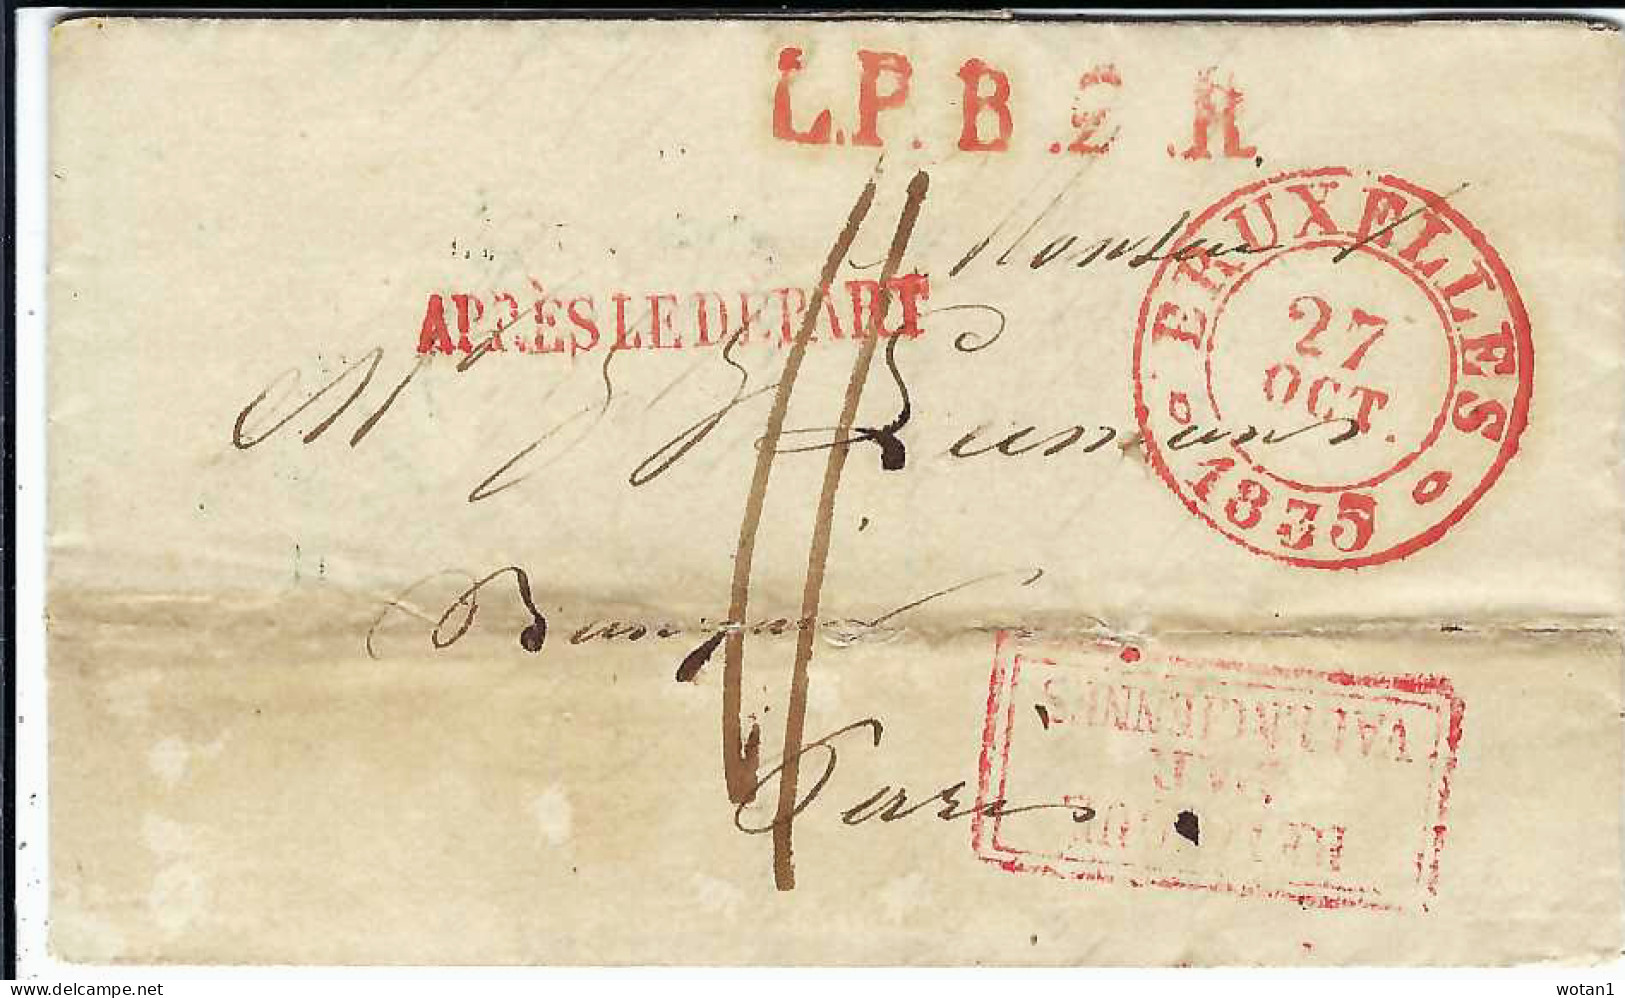 Lettre De BRUXELLES Du 27 OCT 1835 à PARIS + Griffes "L.P.B..R" + "APRES LE DEPART" + "BELGIQUE PAR VALENCIENNES" - 1830-1849 (Independent Belgium)